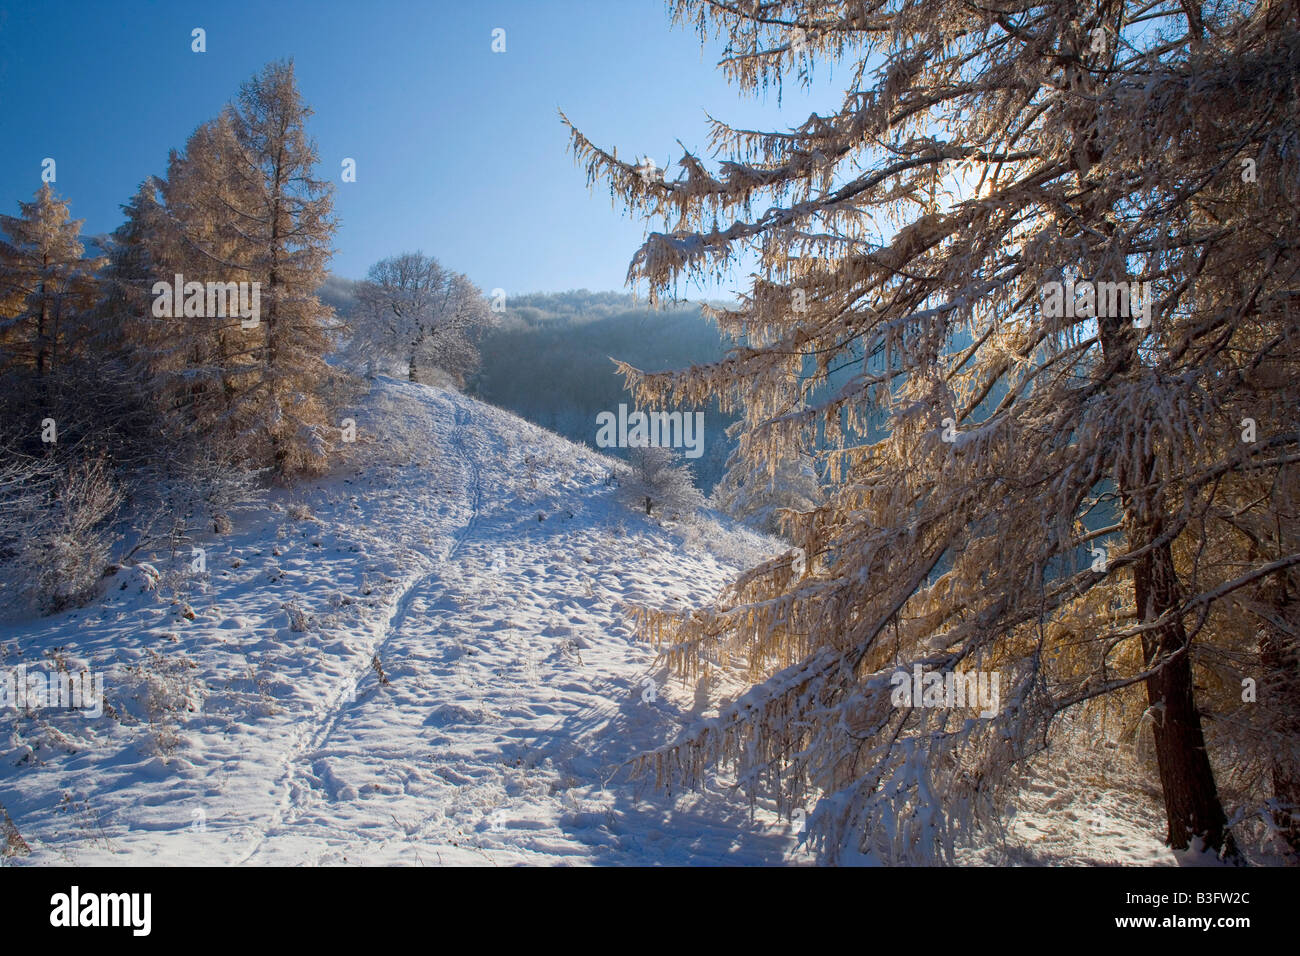 Sentiero nella neve stretto sentiero che conduce attraverso la fresca di paesaggi innevati quando arriva l'inverno Schwaebische Alb Germania Foto Stock